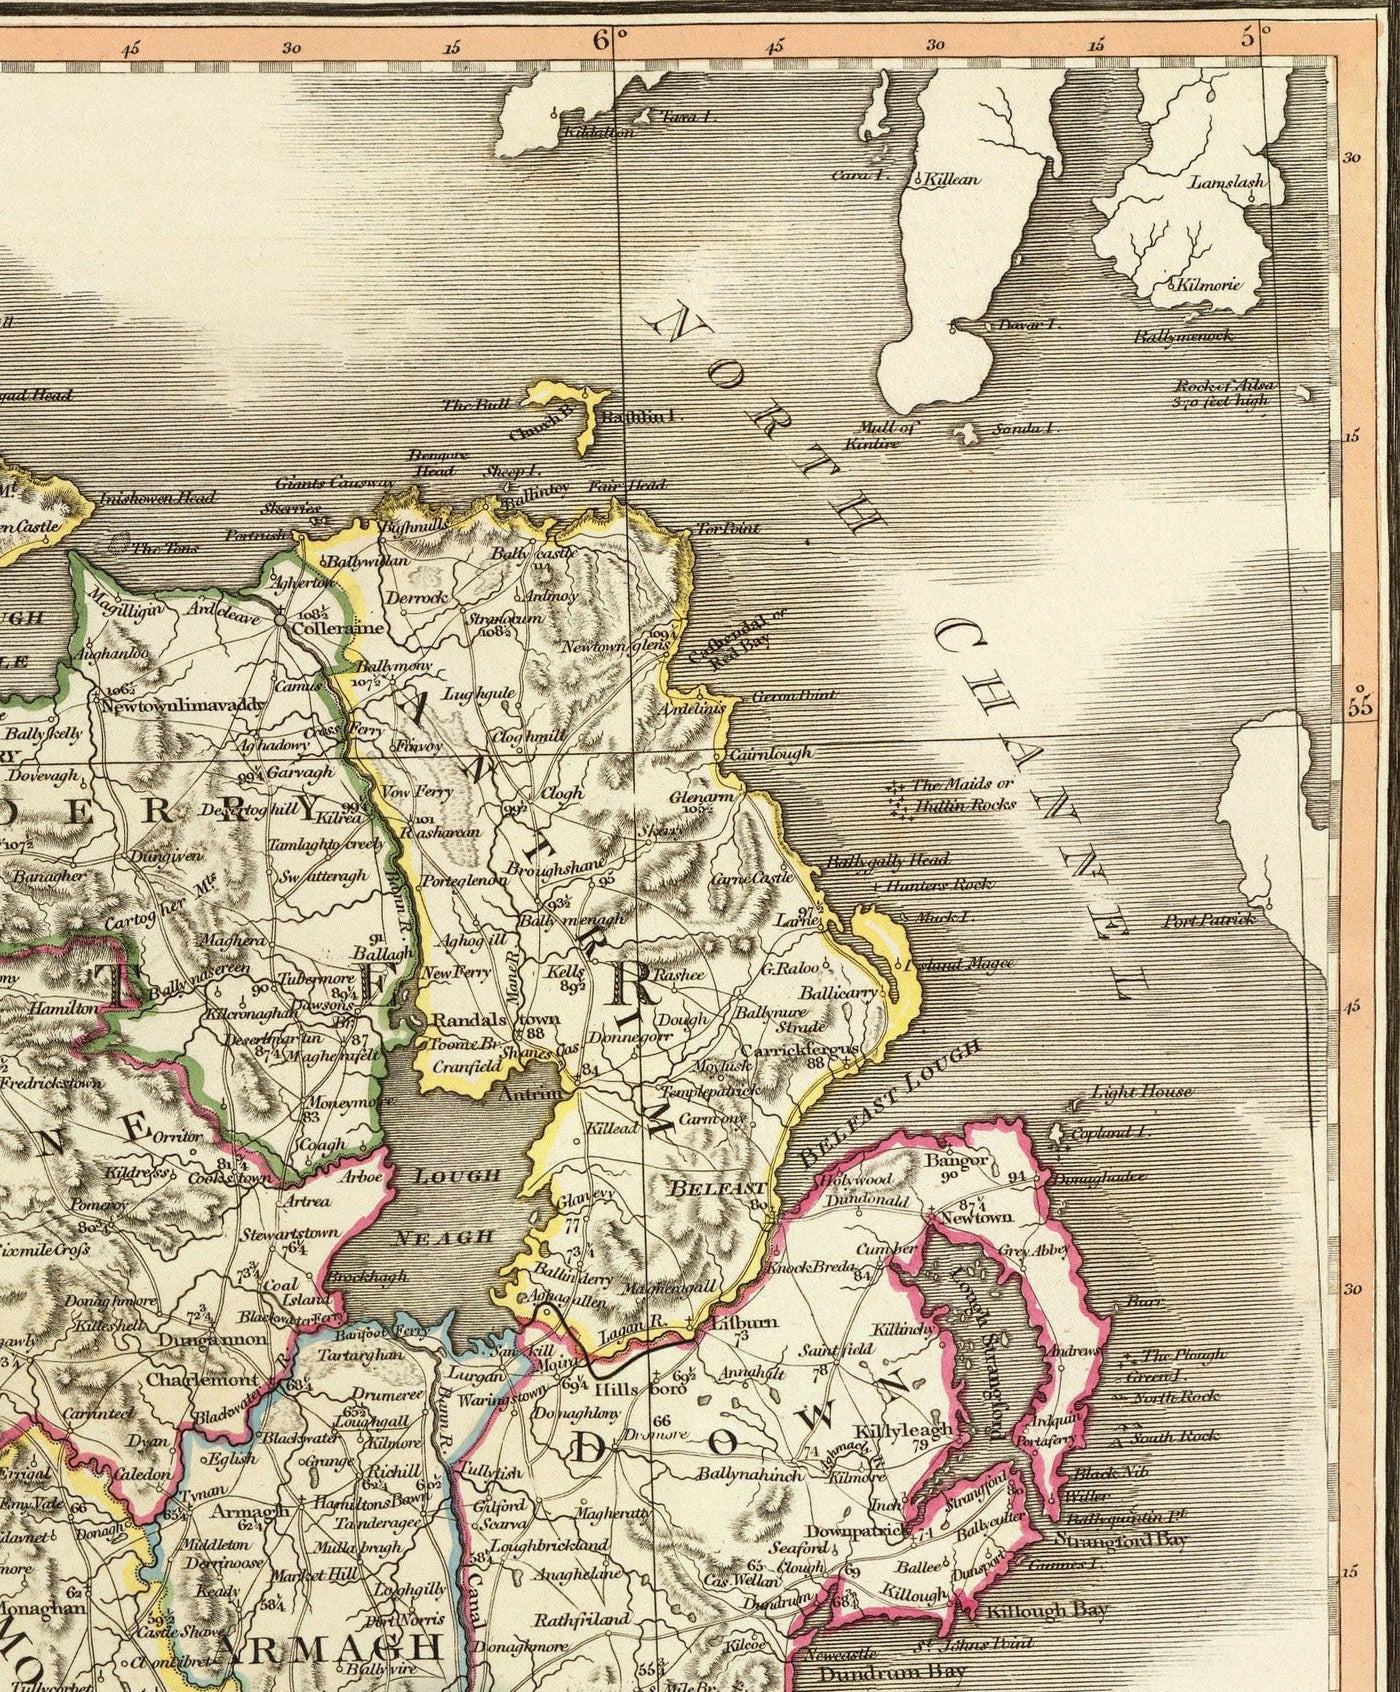 Alte Karte von Irland 1798 von W. Faden - Seltene Farbatlas-Karte - Dublin, Belfast, Kork